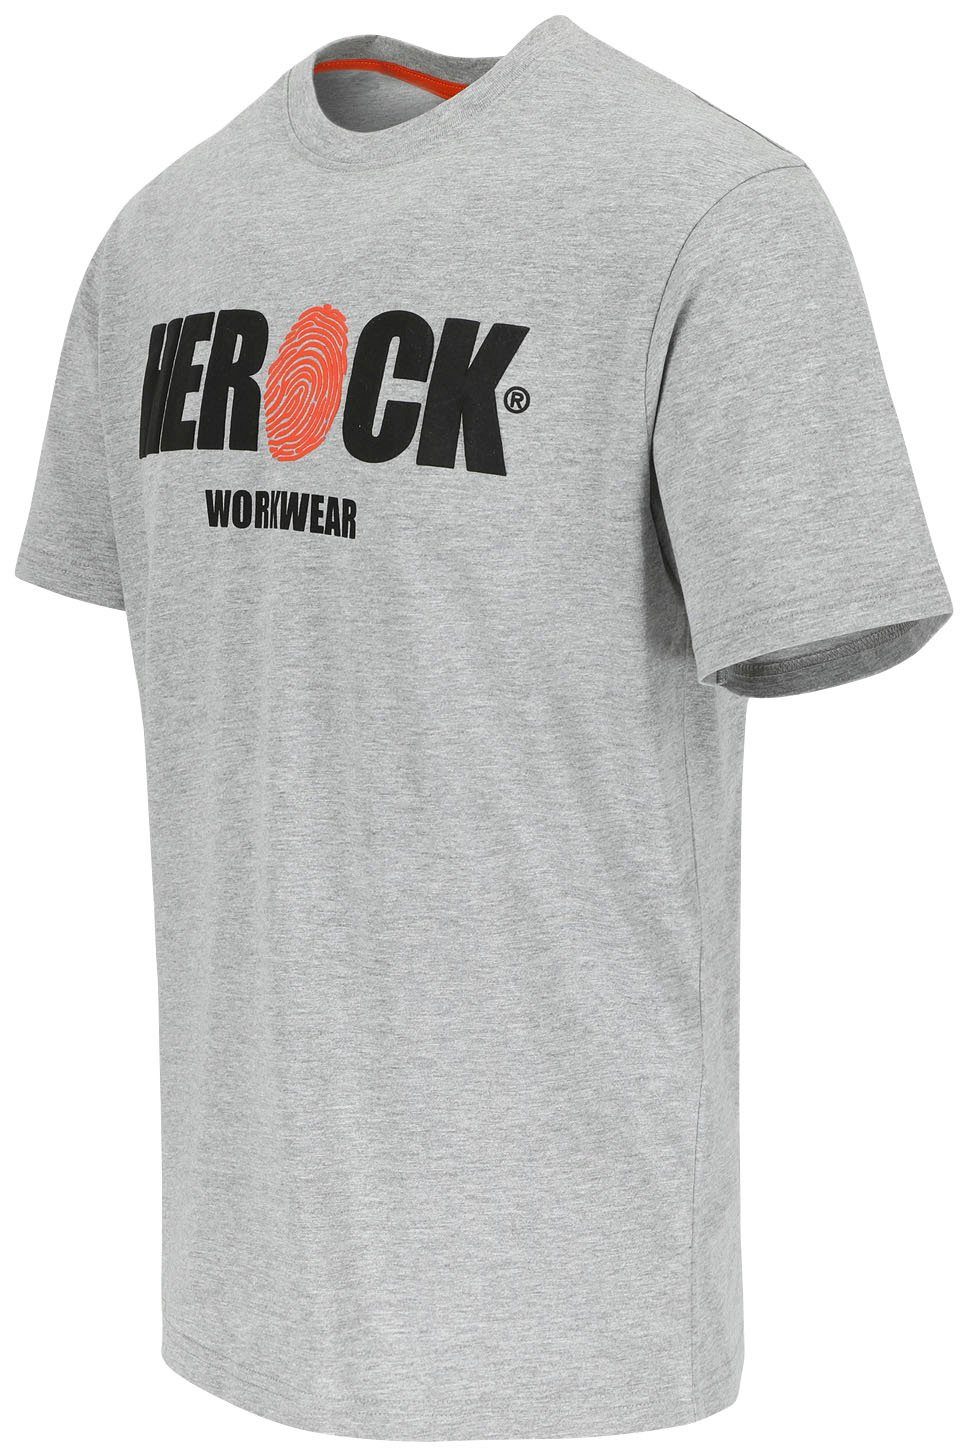 Herock T-Shirt ENI Baumwolle, Rundhals, Herock®-Aufdruck, angenehmes grau mit Tragegefühl